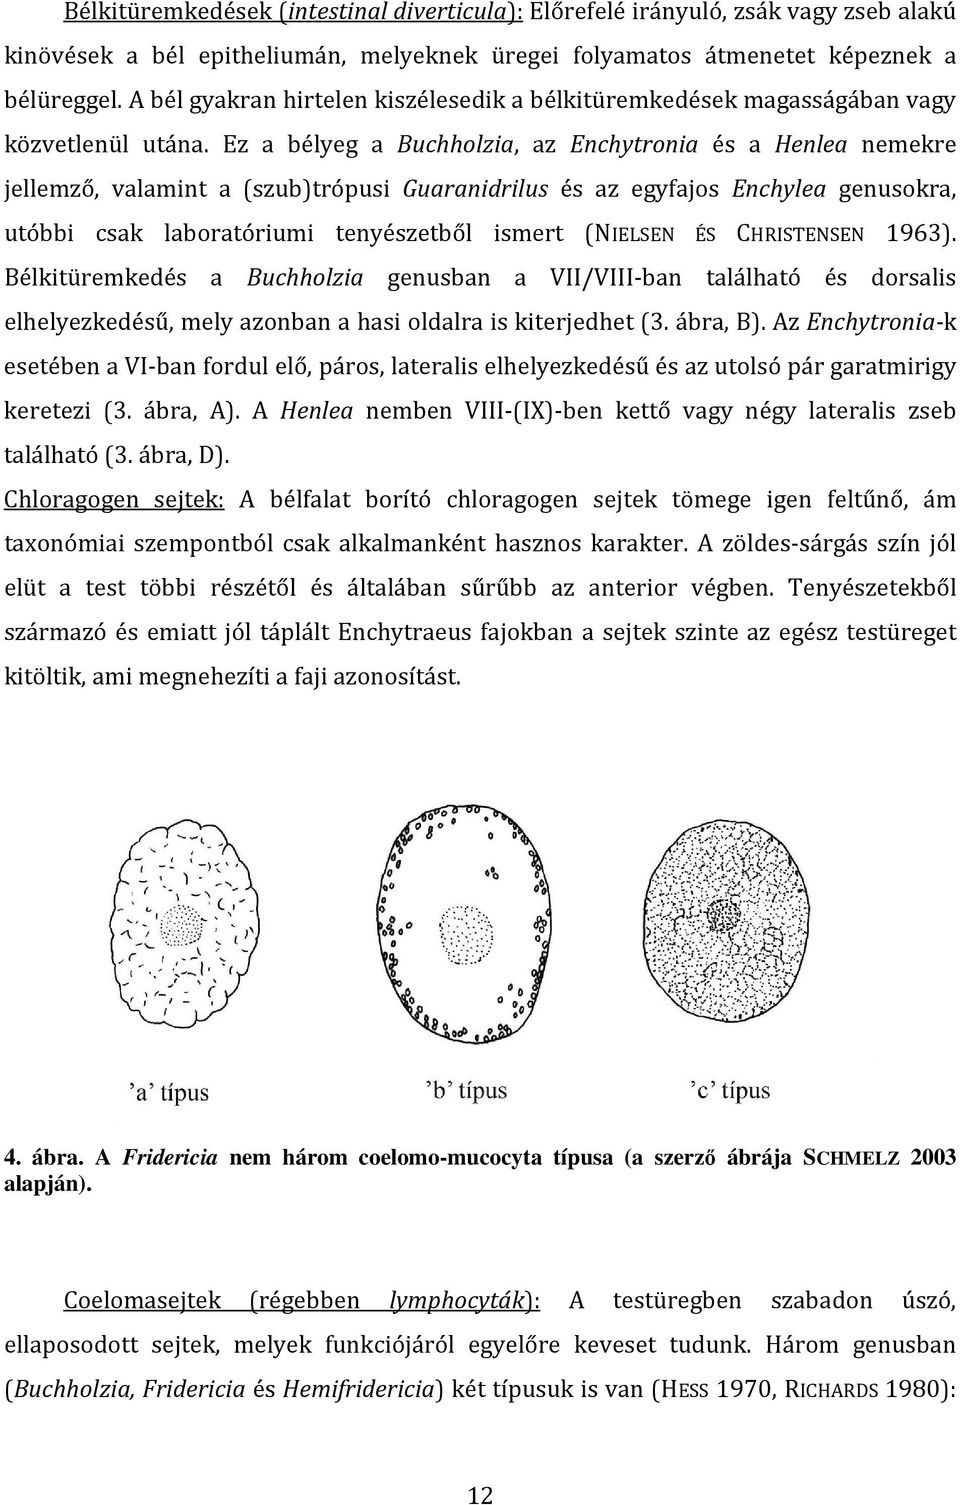 Ez a bélyeg a Buchholzia, az Enchytronia és a Henlea nemekre jellemző, valamint a (szub)trópusi Guaranidrilus és az egyfajos Enchylea genusokra, utóbbi csak laboratóriumi tenyészetből ismert (NIELSEN